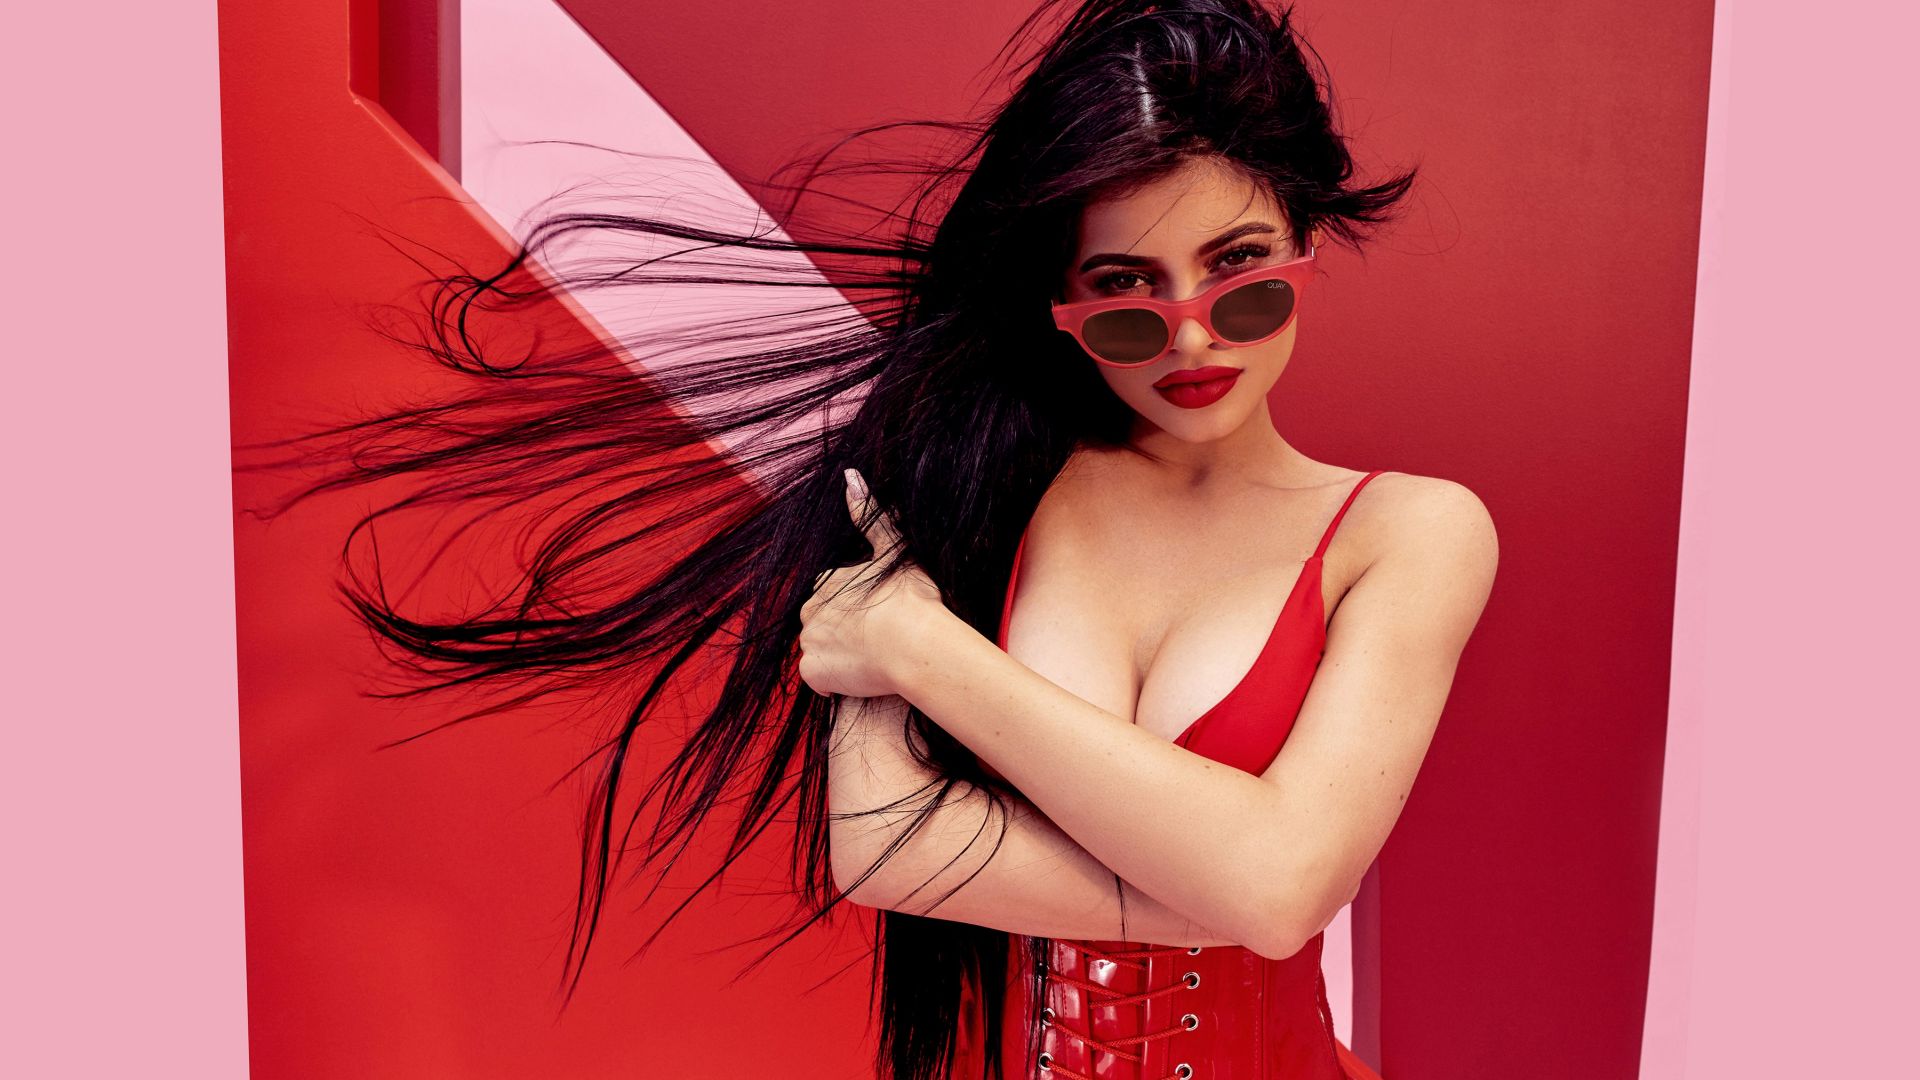 Wallpaper Hot Kylie Jenner, hot model, red dress, sunglasses, 4k